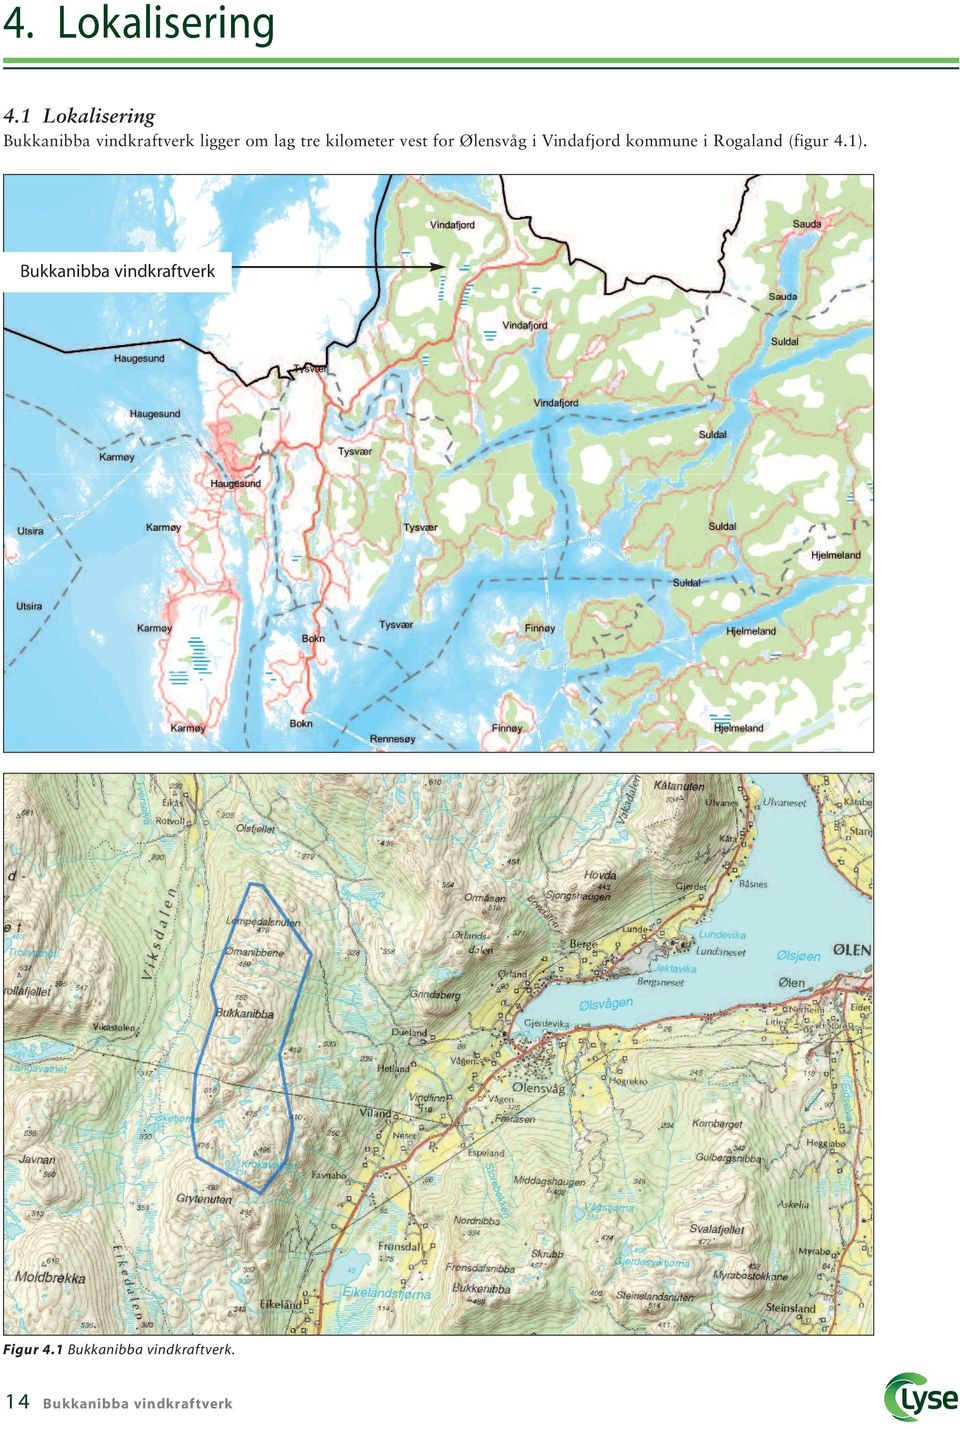 kilometer vest for Ølensvåg i Vindafjord kommune i Rogaland